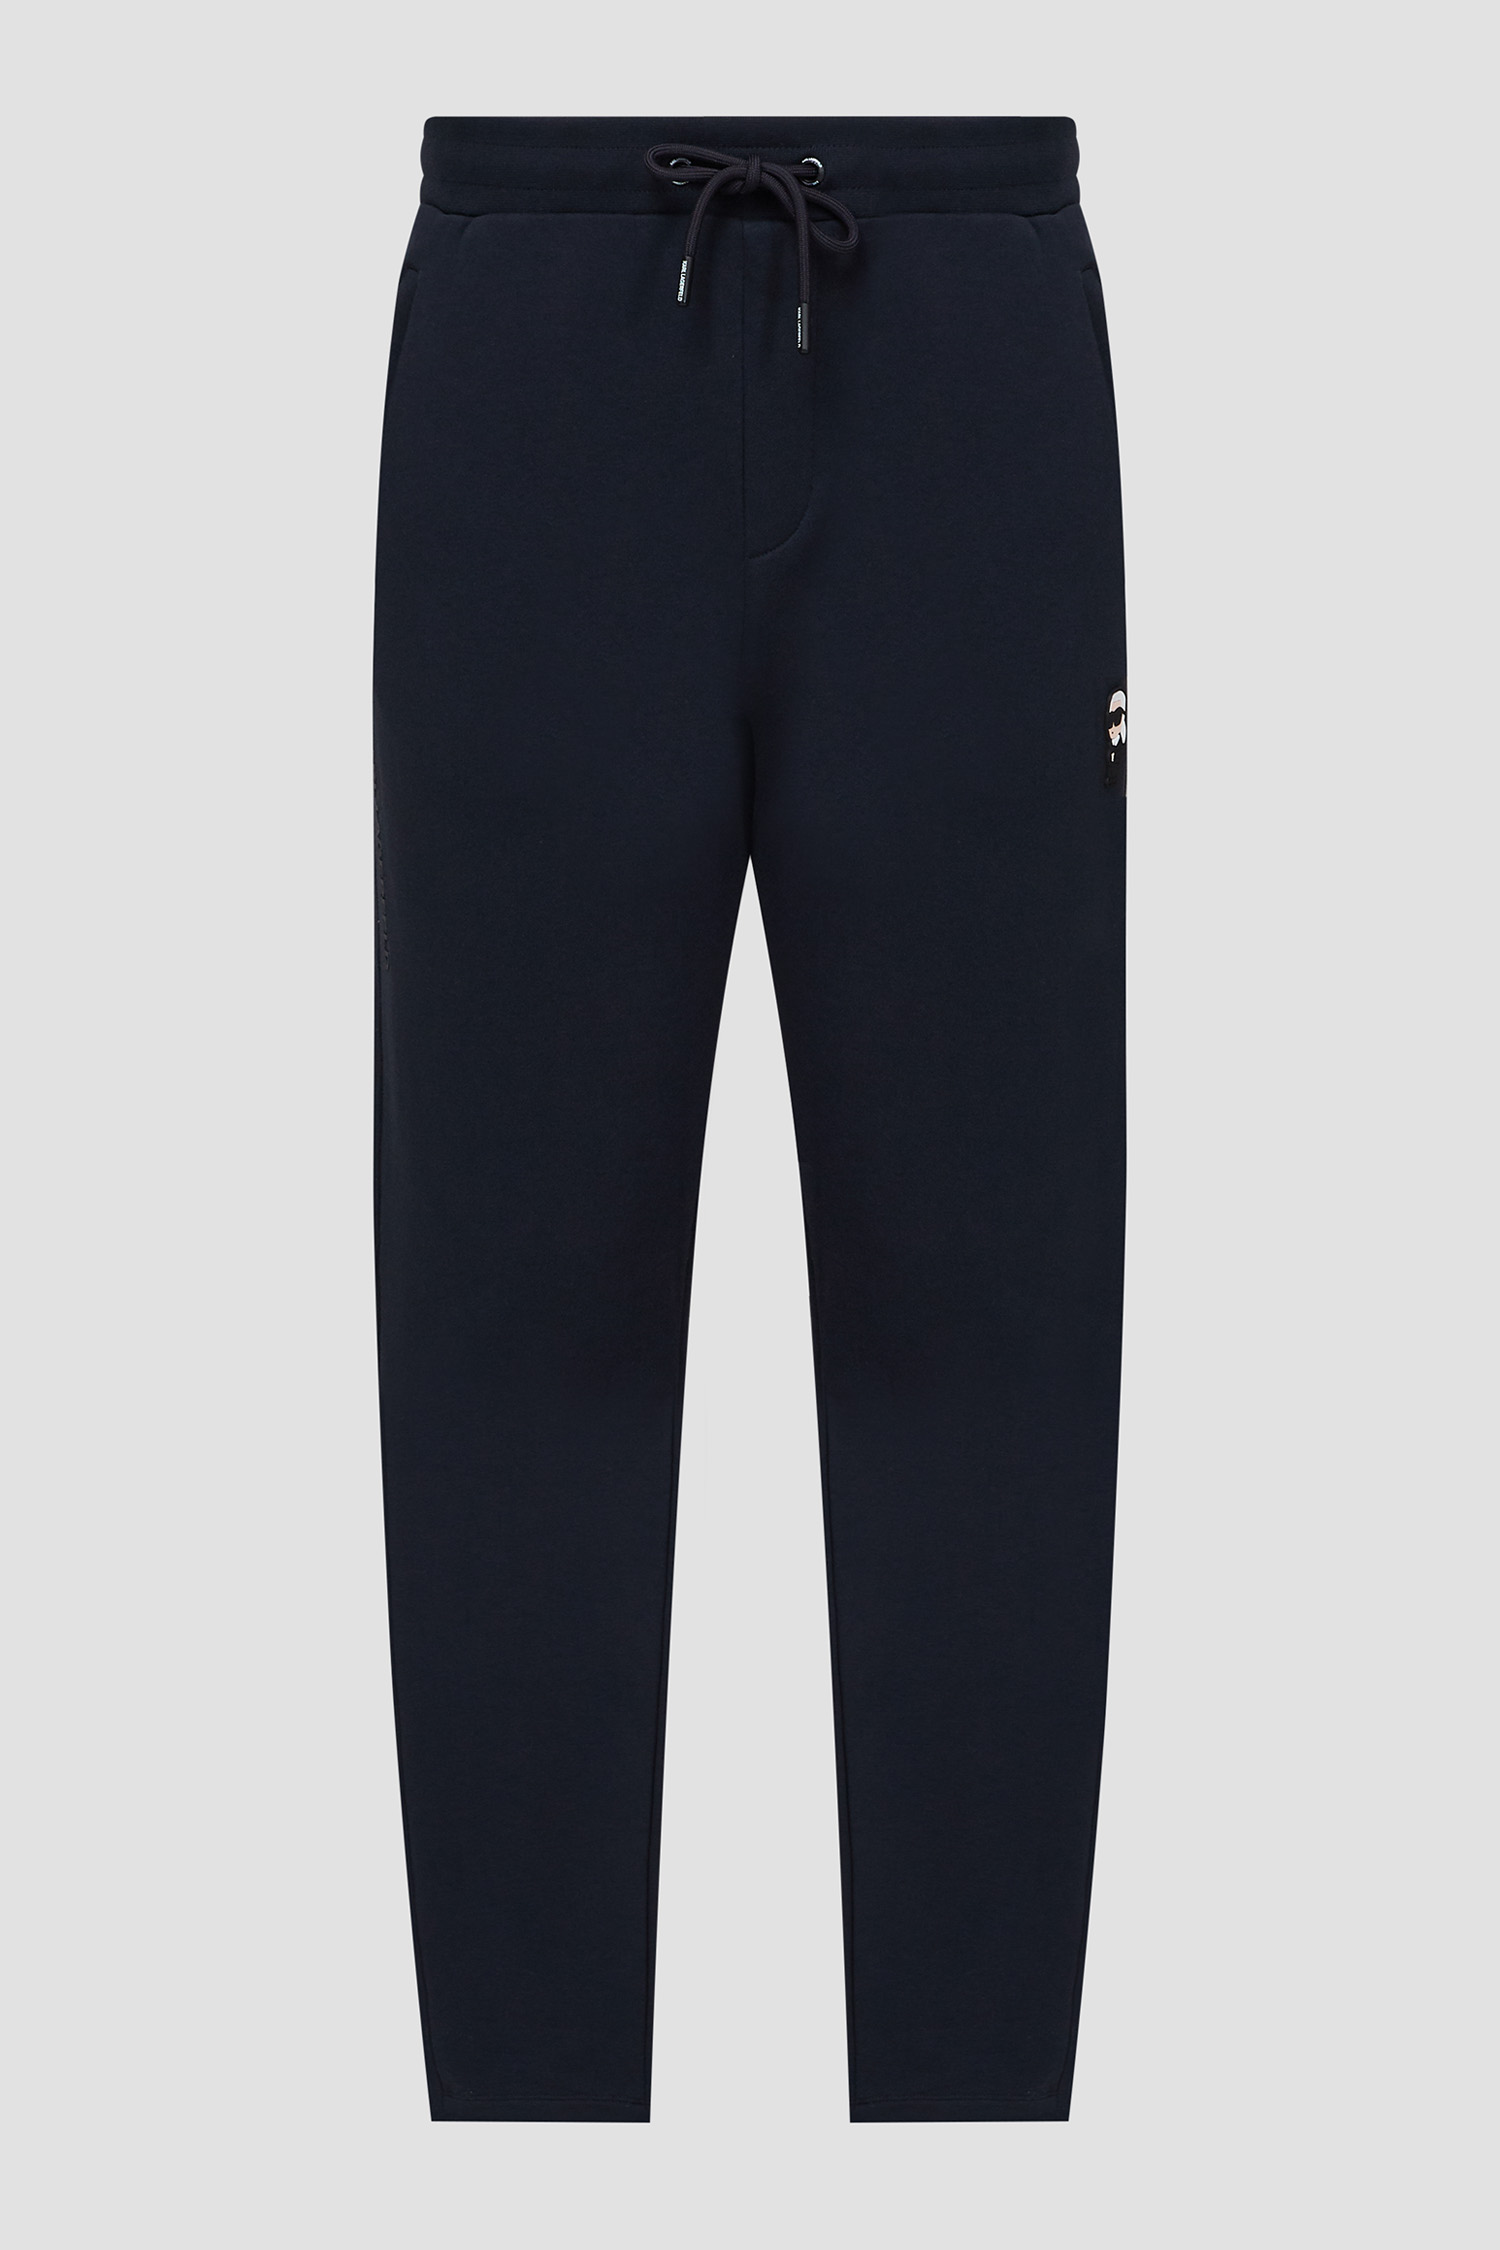 Чоловічі темно-сині спортивні штани Karl Lagerfeld 532900.705045;690